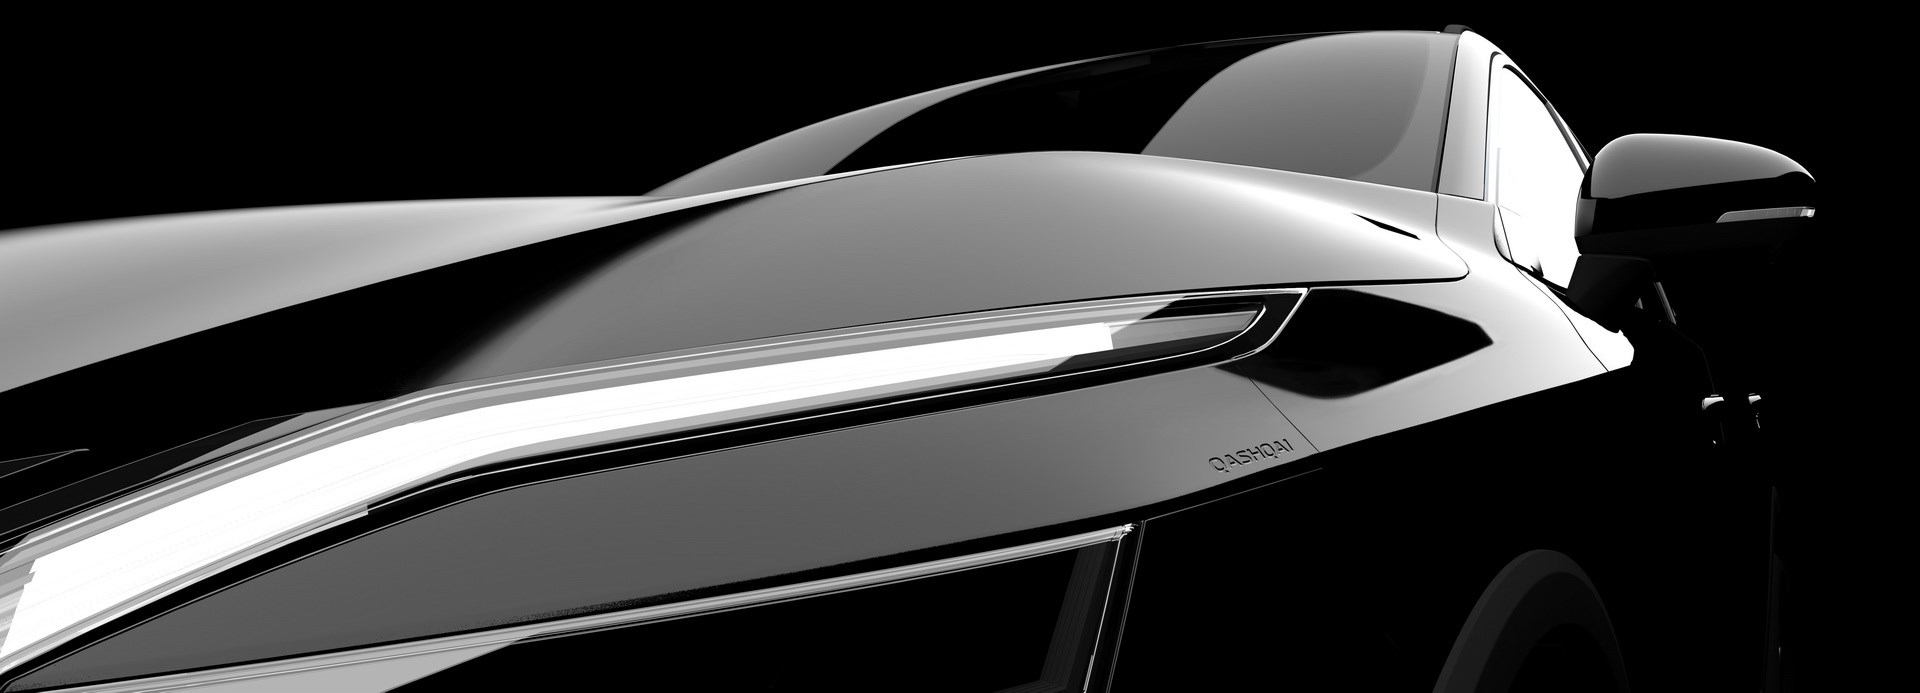 Yeni nesil 2021 Nissan Qashqai'den ilk teaser geldi: e-Power hibrit sistemle geliyor